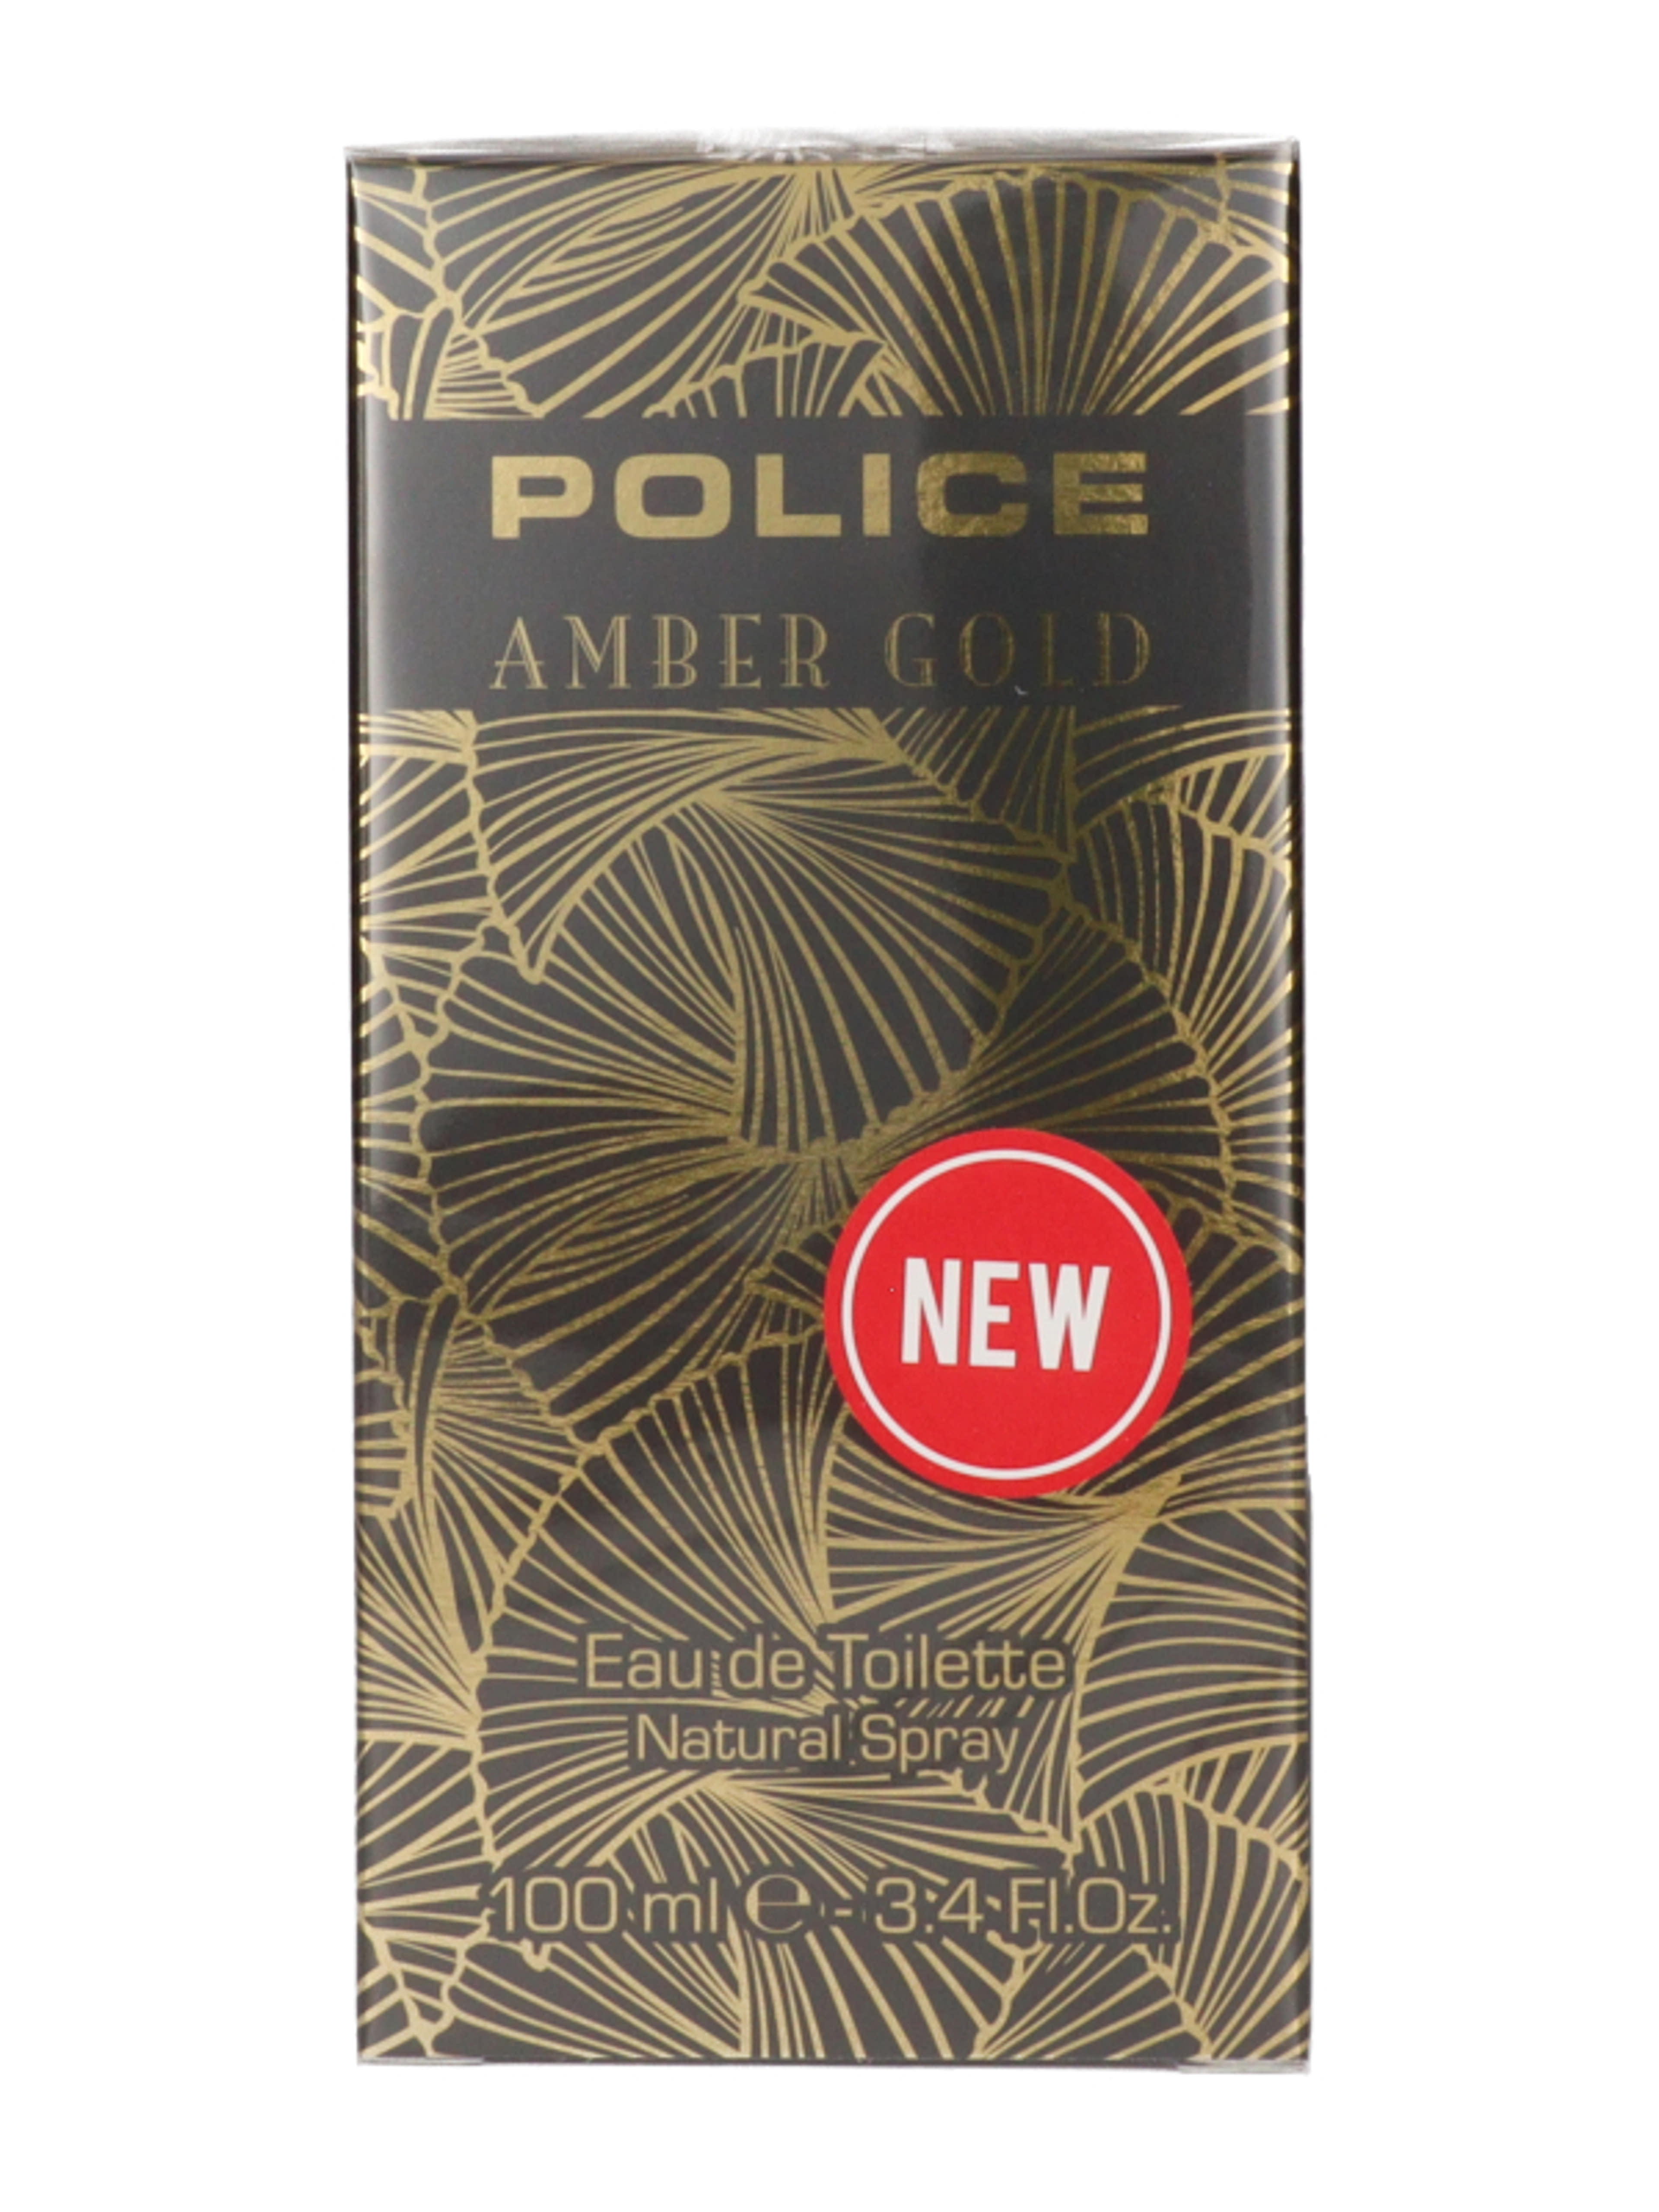 Police Amber Gold for Women Eau de Toilette - 100 ml-2